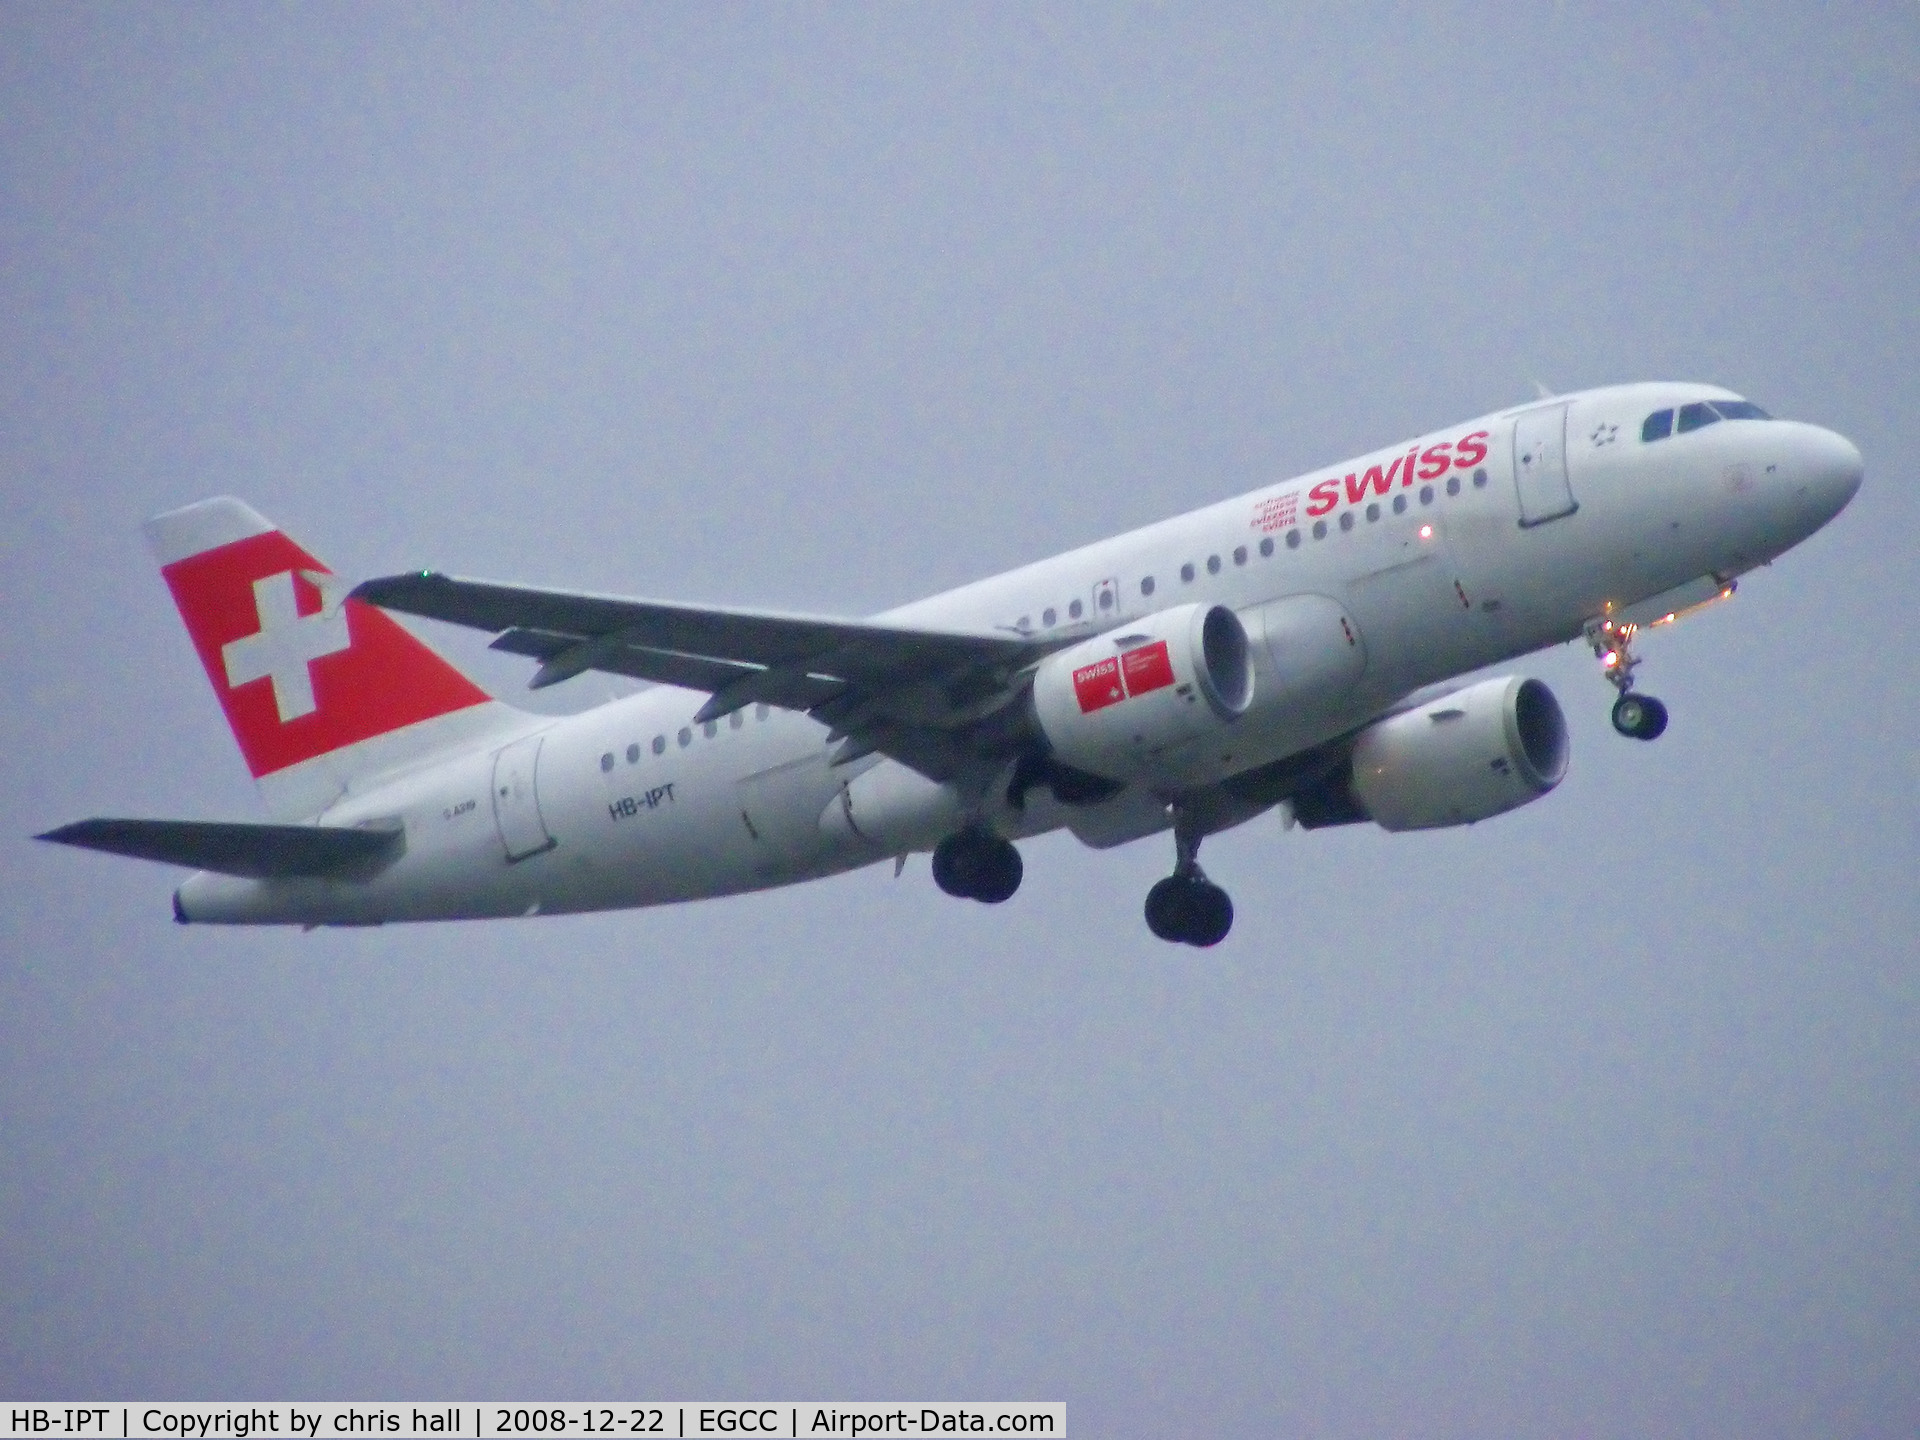 HB-IPT, 1997 Airbus A319-112 C/N 727, Swiss Air